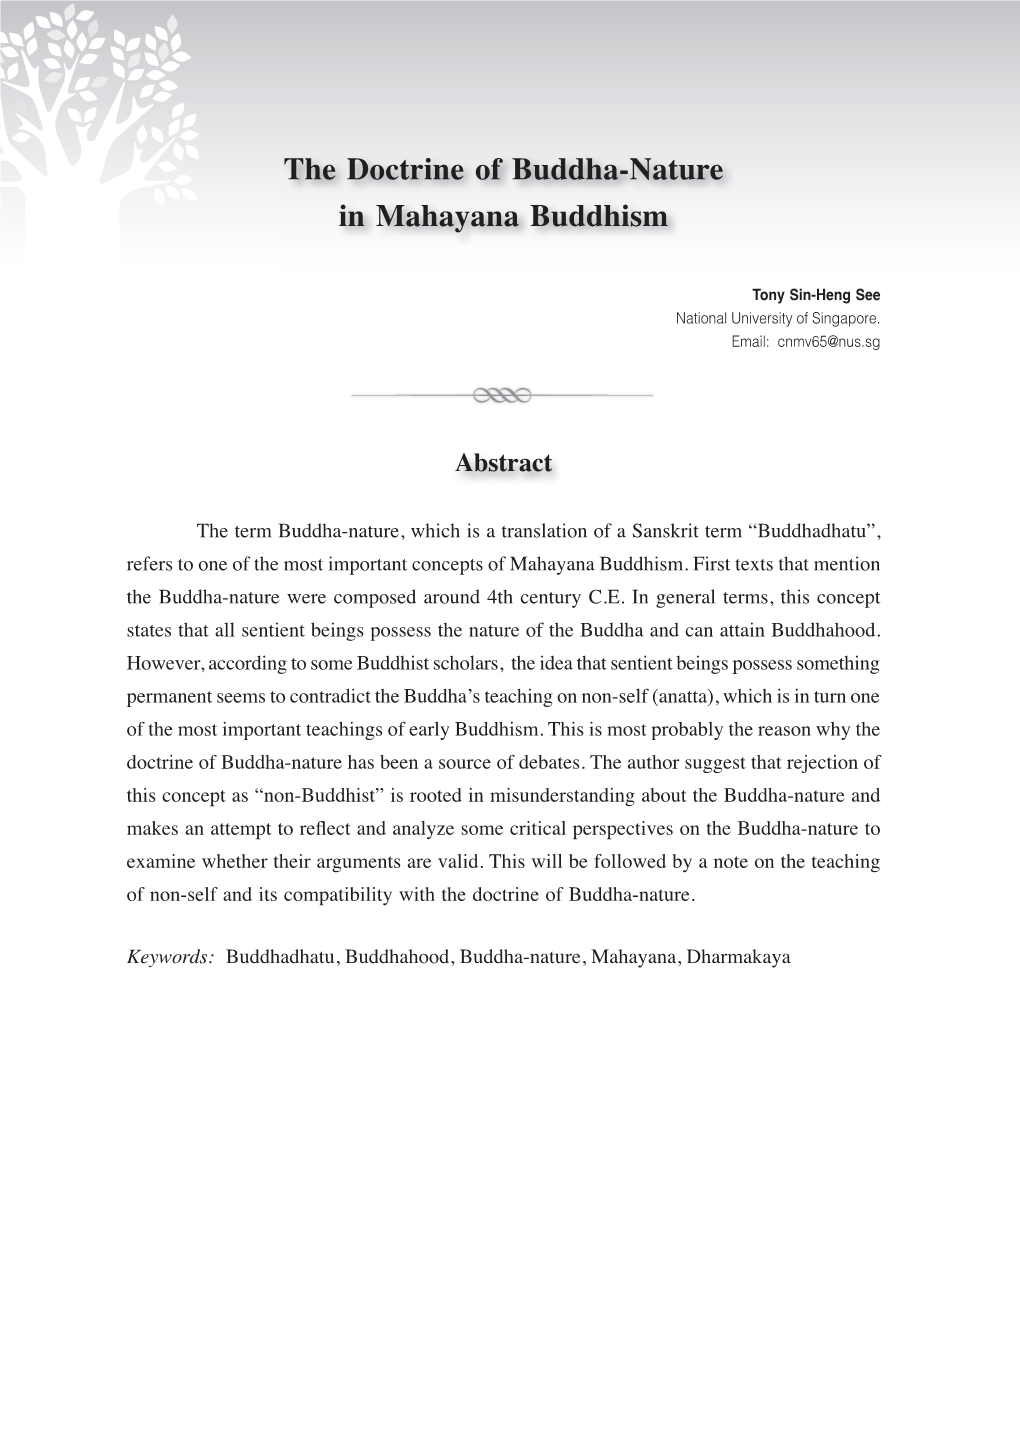 The Doctrine of Buddha-Nature in Mahayana Buddhism